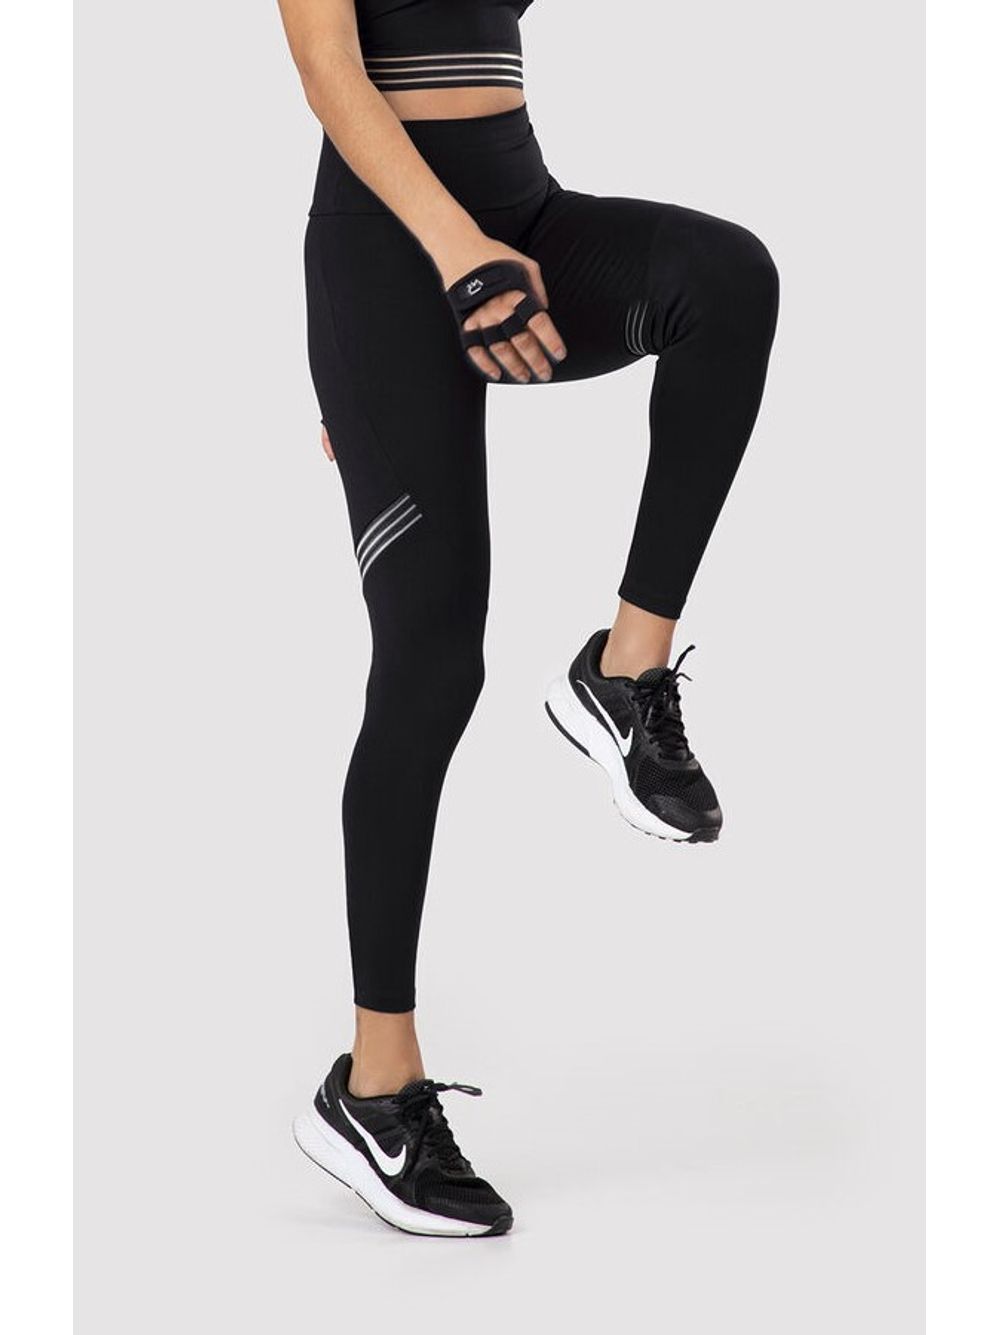 Calça Legging Nike Pro Dri-Fit Feminina - Preto+Cinza